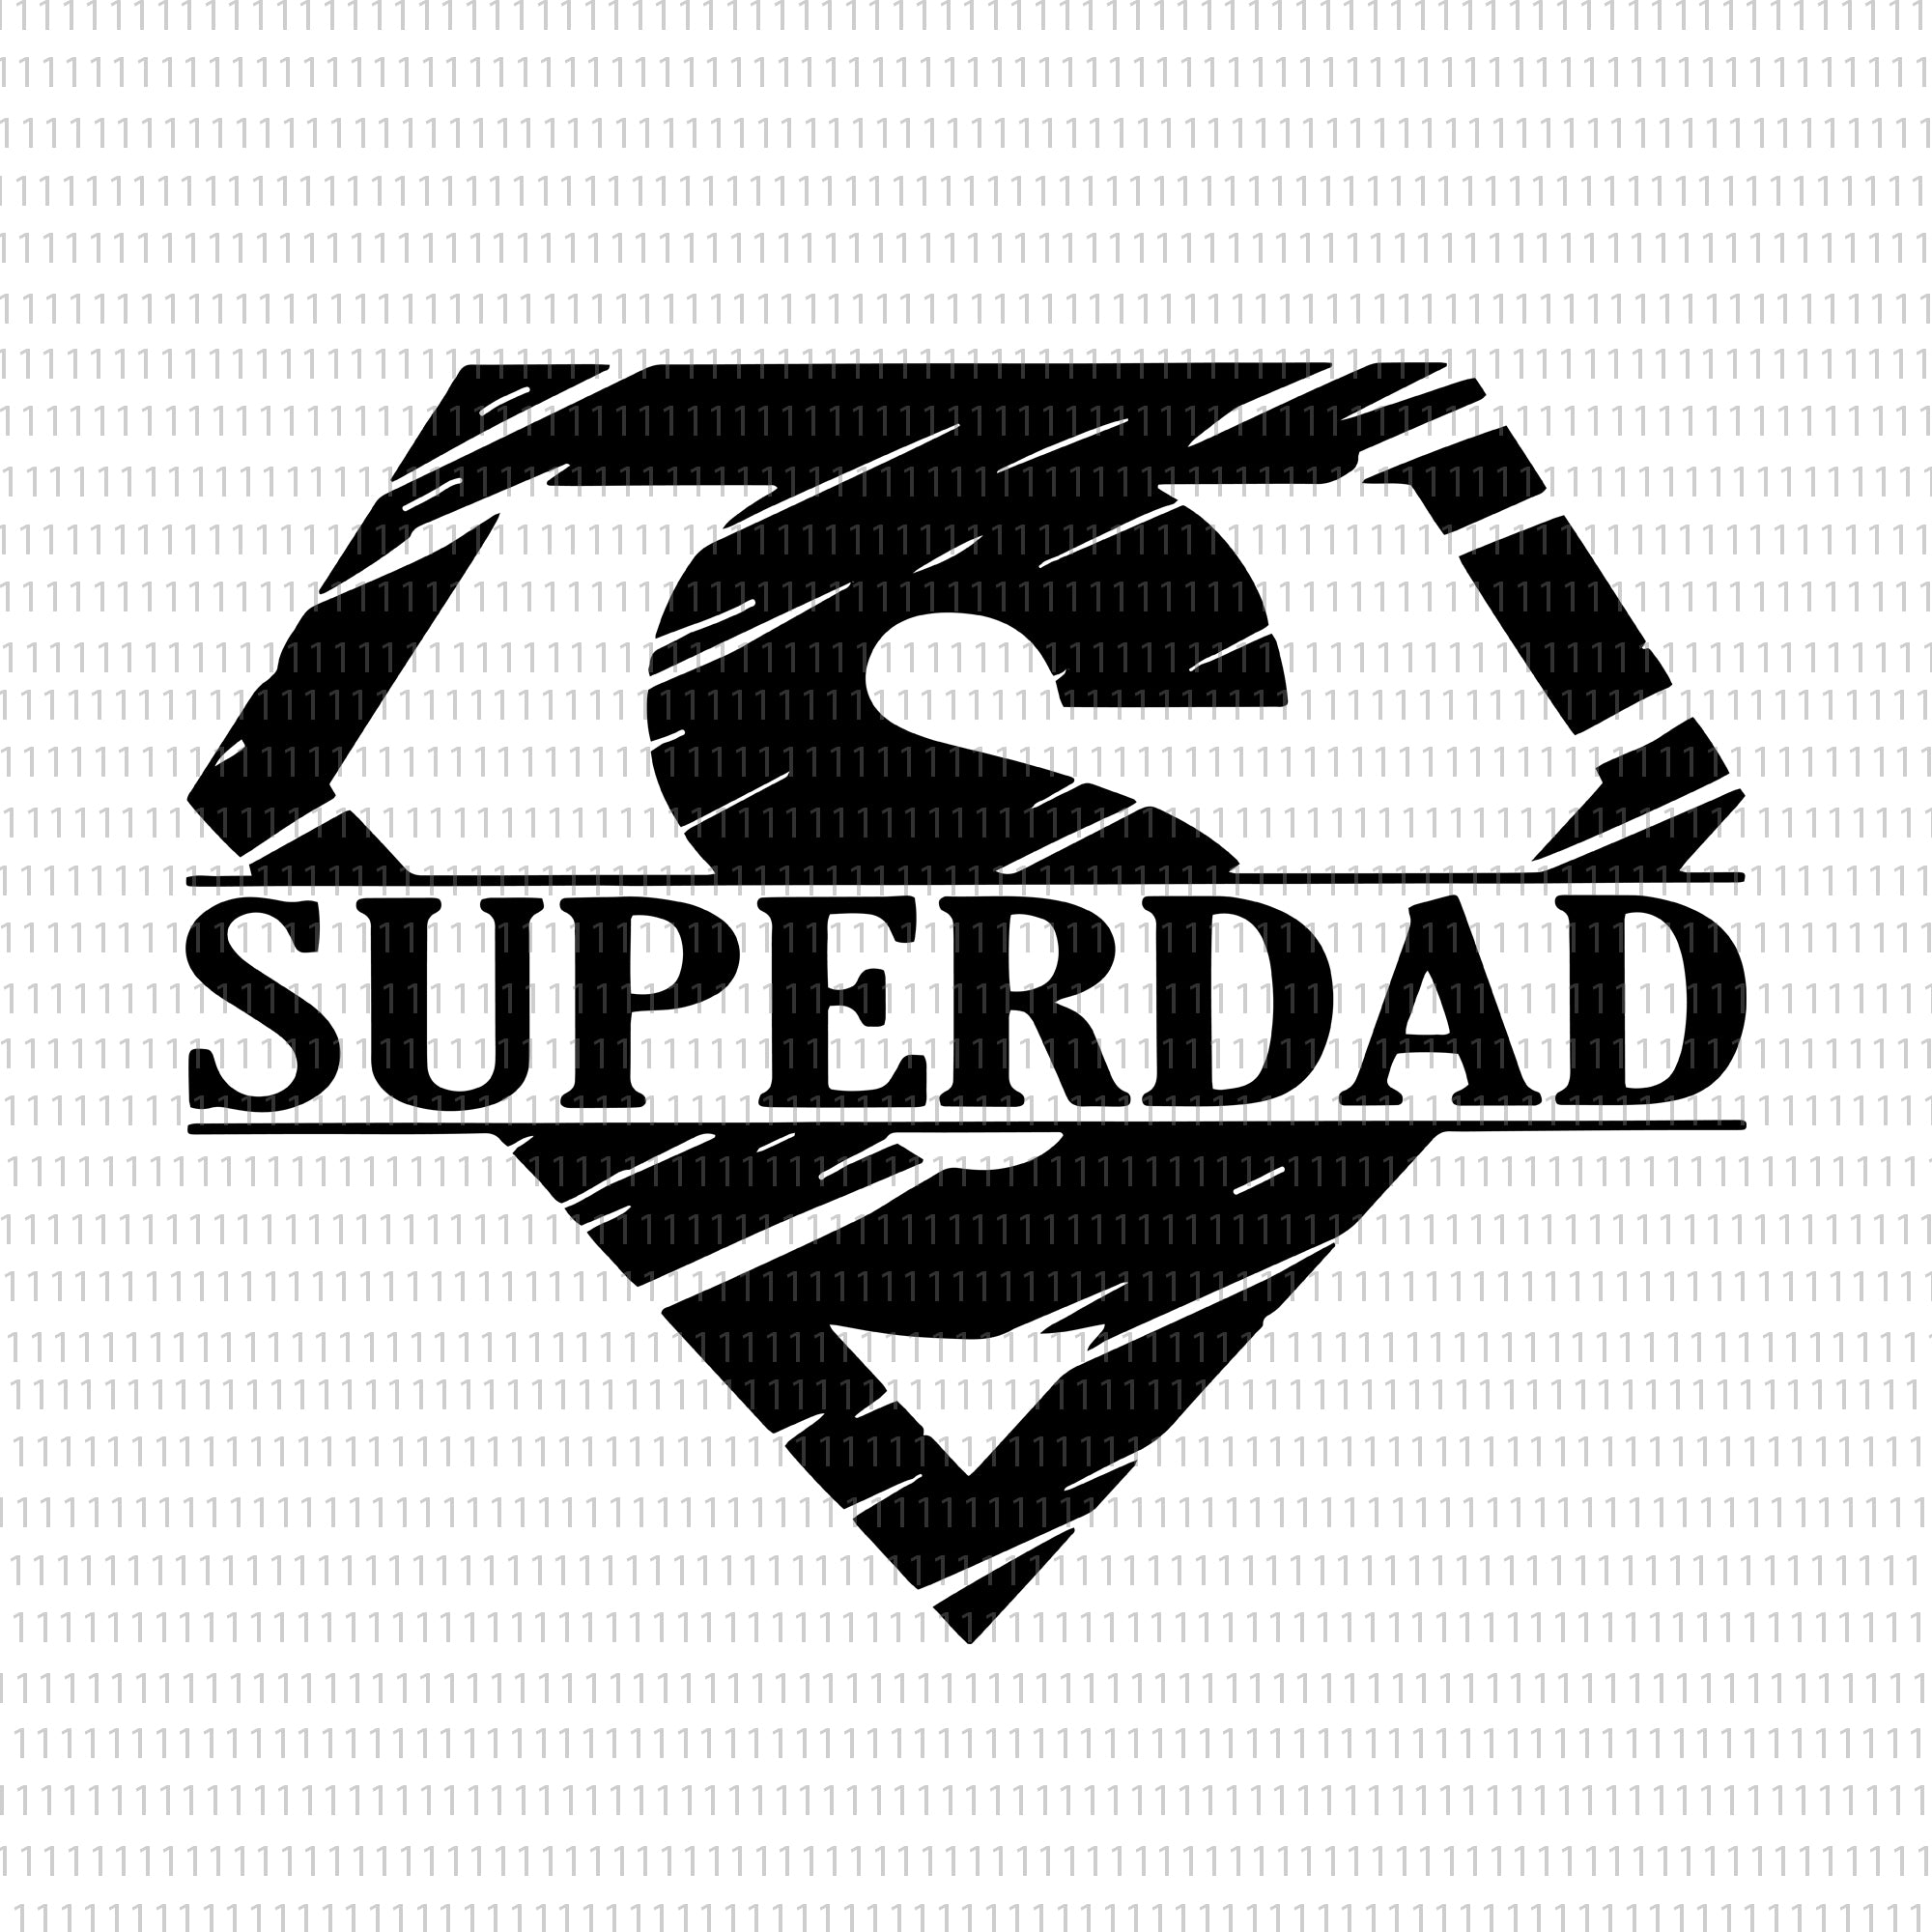 Download Super Dad Svg Super Dad Png Super Dad Father Day Svg Father Day Pn Buydesigntshirt